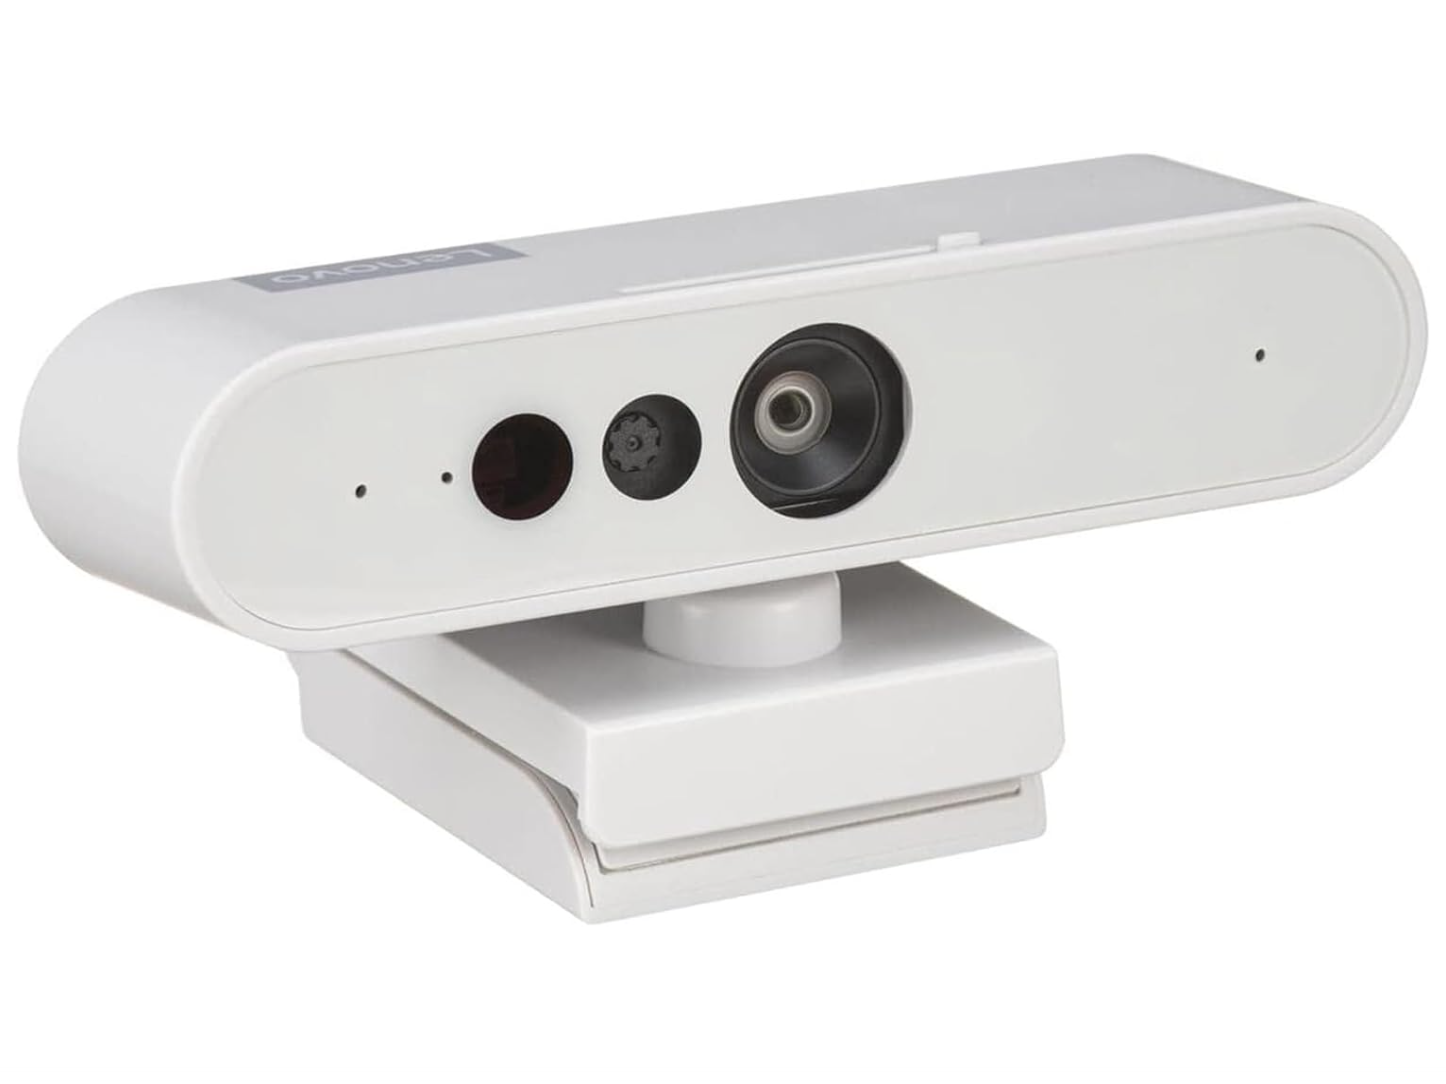 Lenovo 510 FHD Webcam - Best budget Windows Hello webcam runner-up